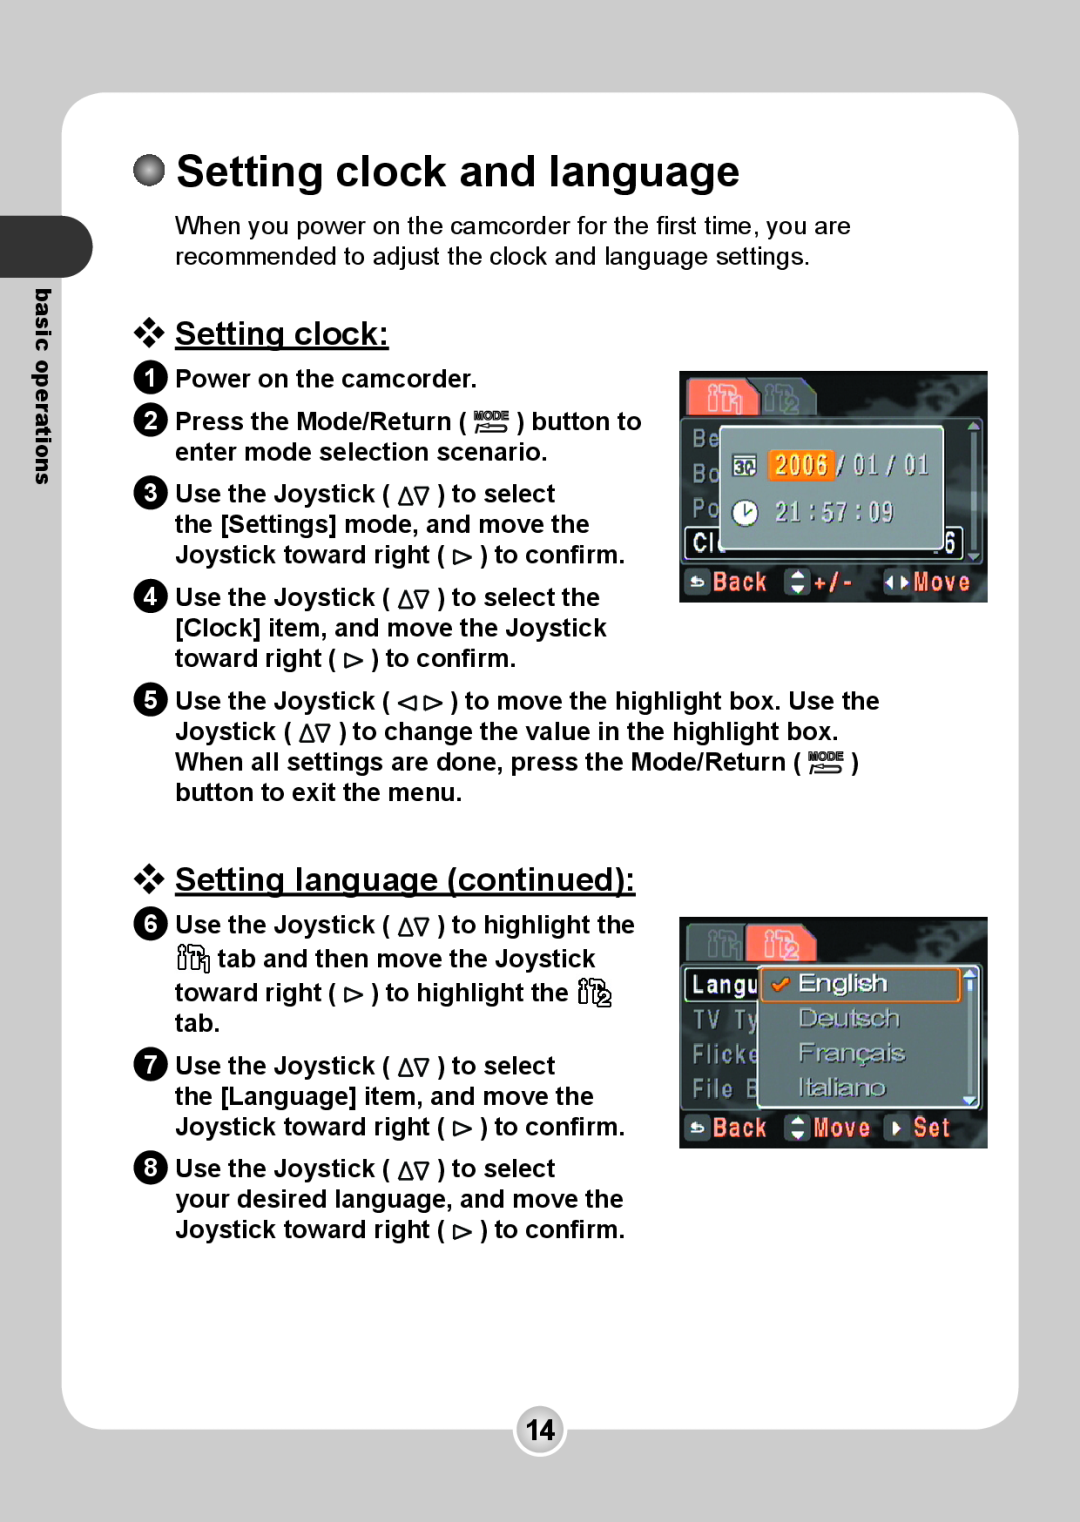 Nokia 6108 manual Setting clock and language, Setting language continued 